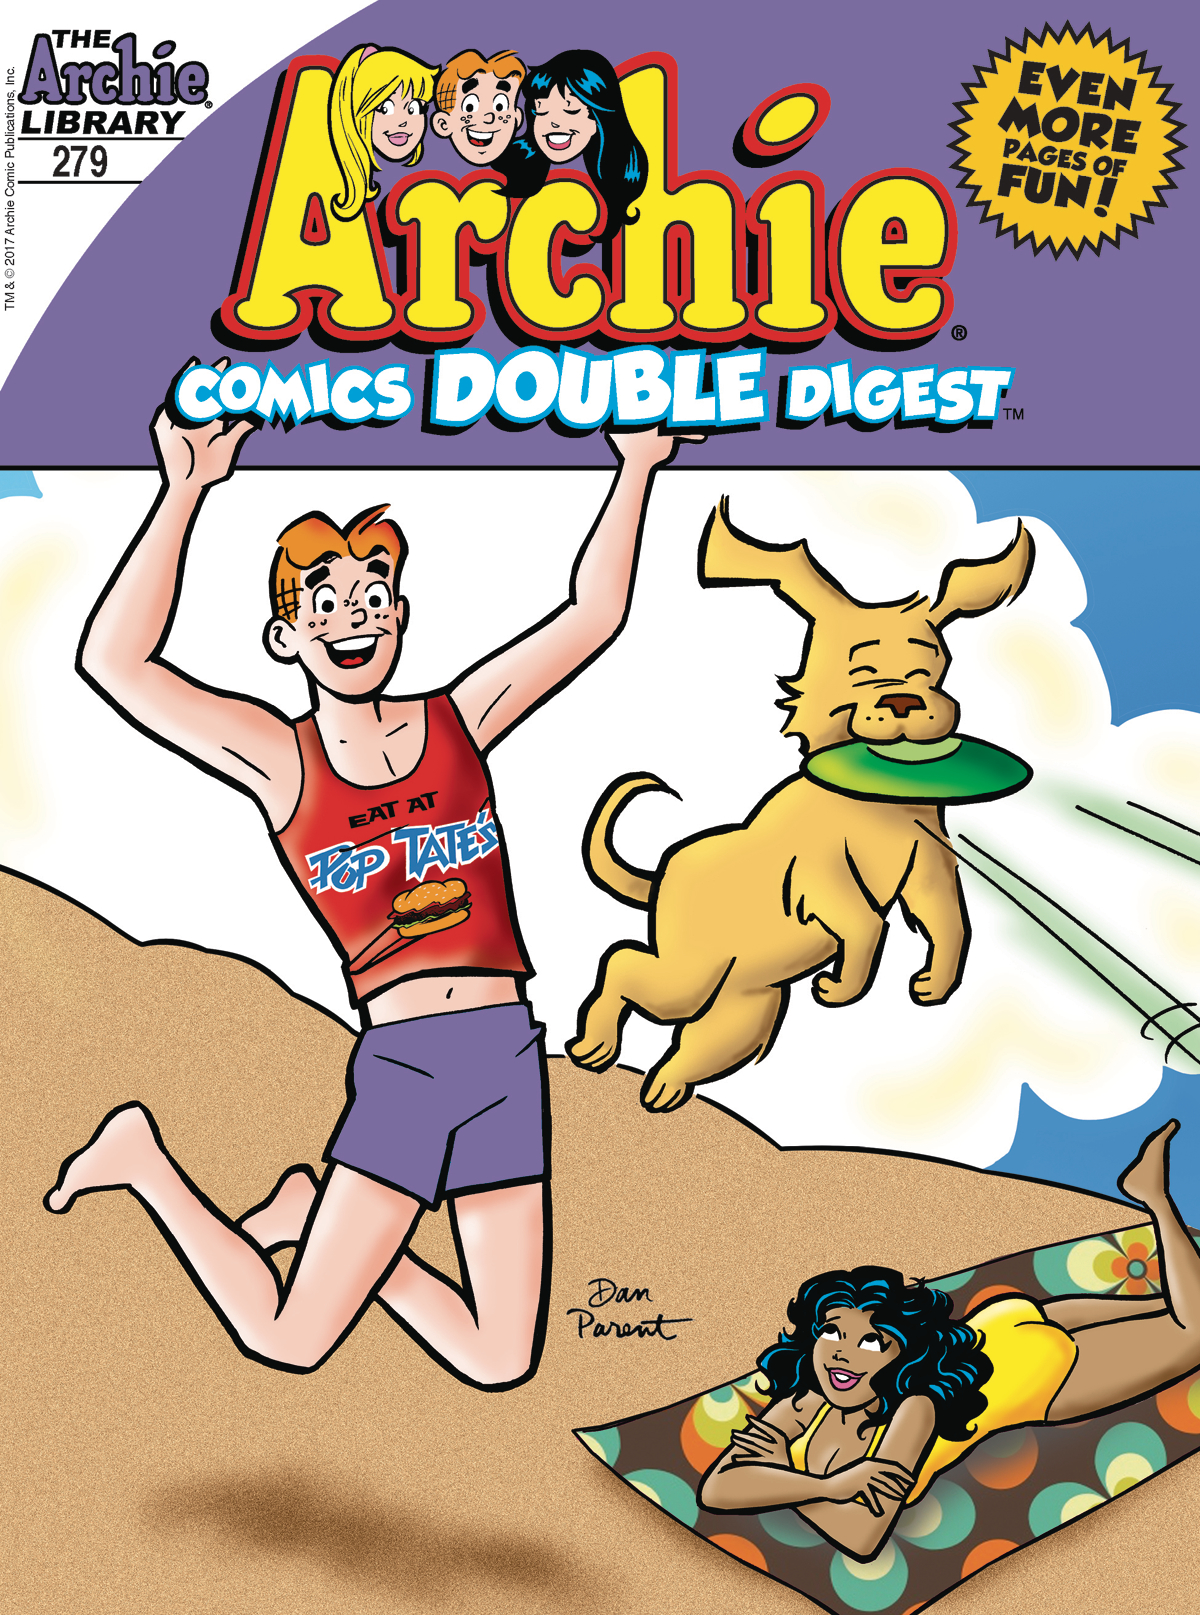 ARCHIE COMICS DOUBLE DIGEST #279